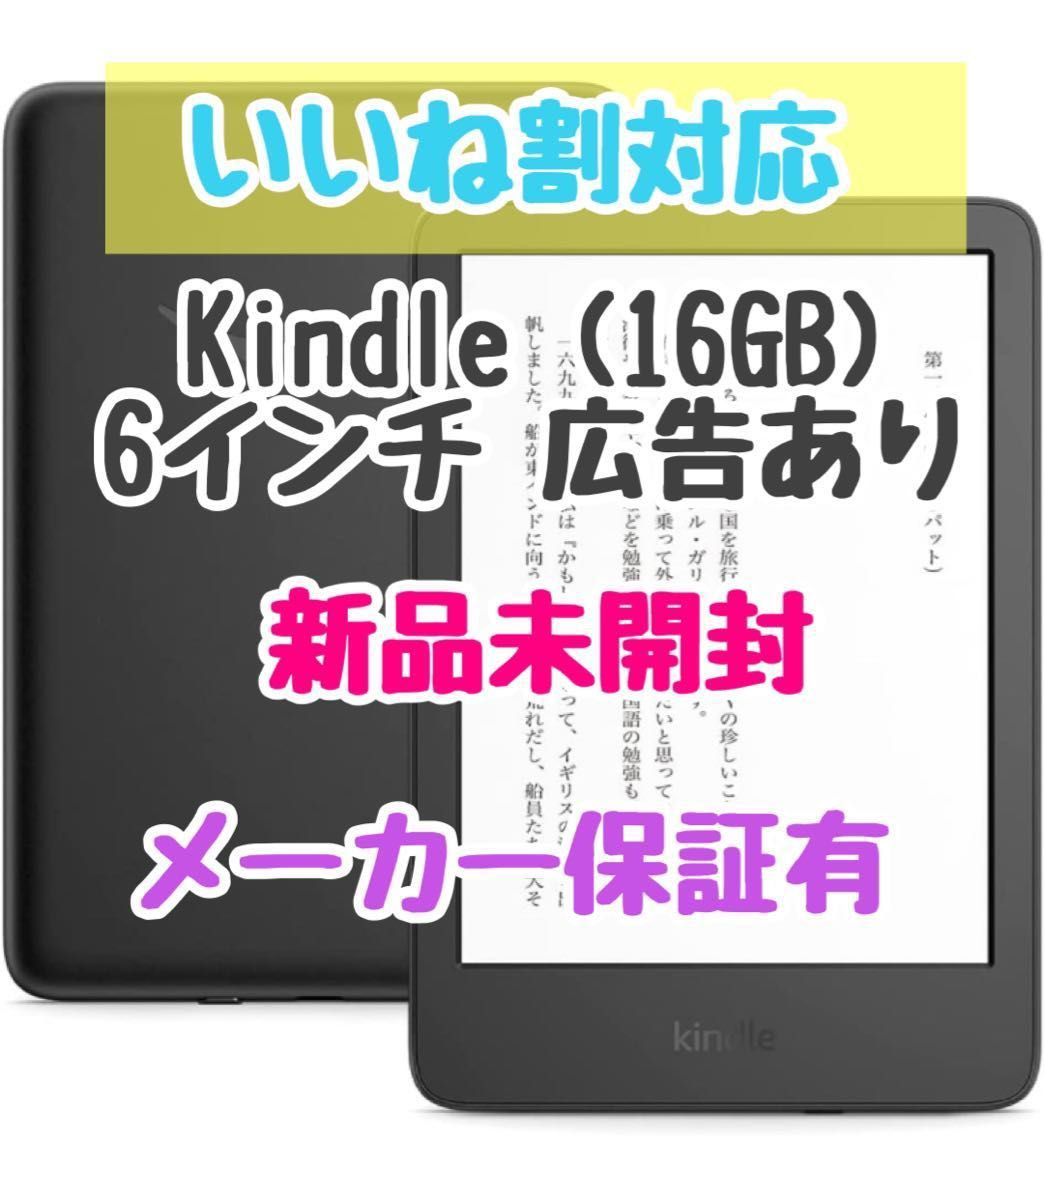 新品 / 保証付】Kindle (16GB) 6インチディスプレイ 広告あり｜PayPay